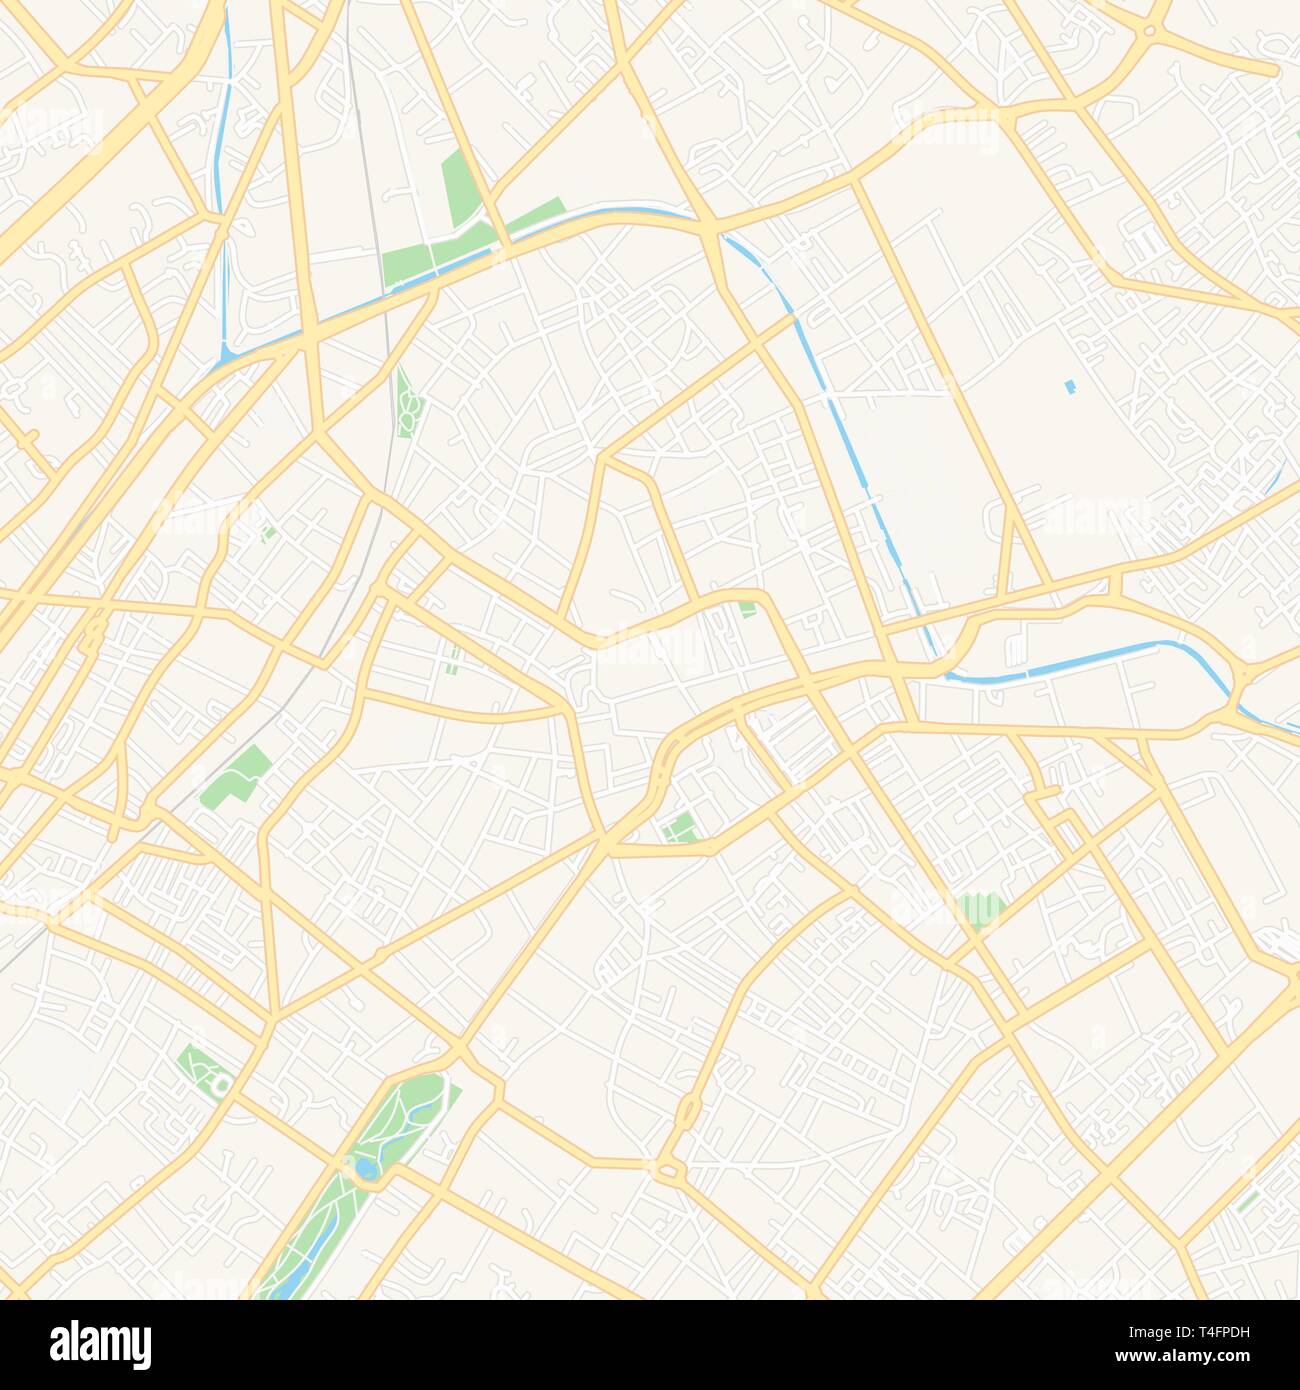 Druckbare Karte von Roubaix, Frankreich mit Haupt- und Nebenstraßen und größere Bahnen. Diese Karte ist sorgfältig für das Routing und die Platzierung von individuell gestalteten Stock Vektor